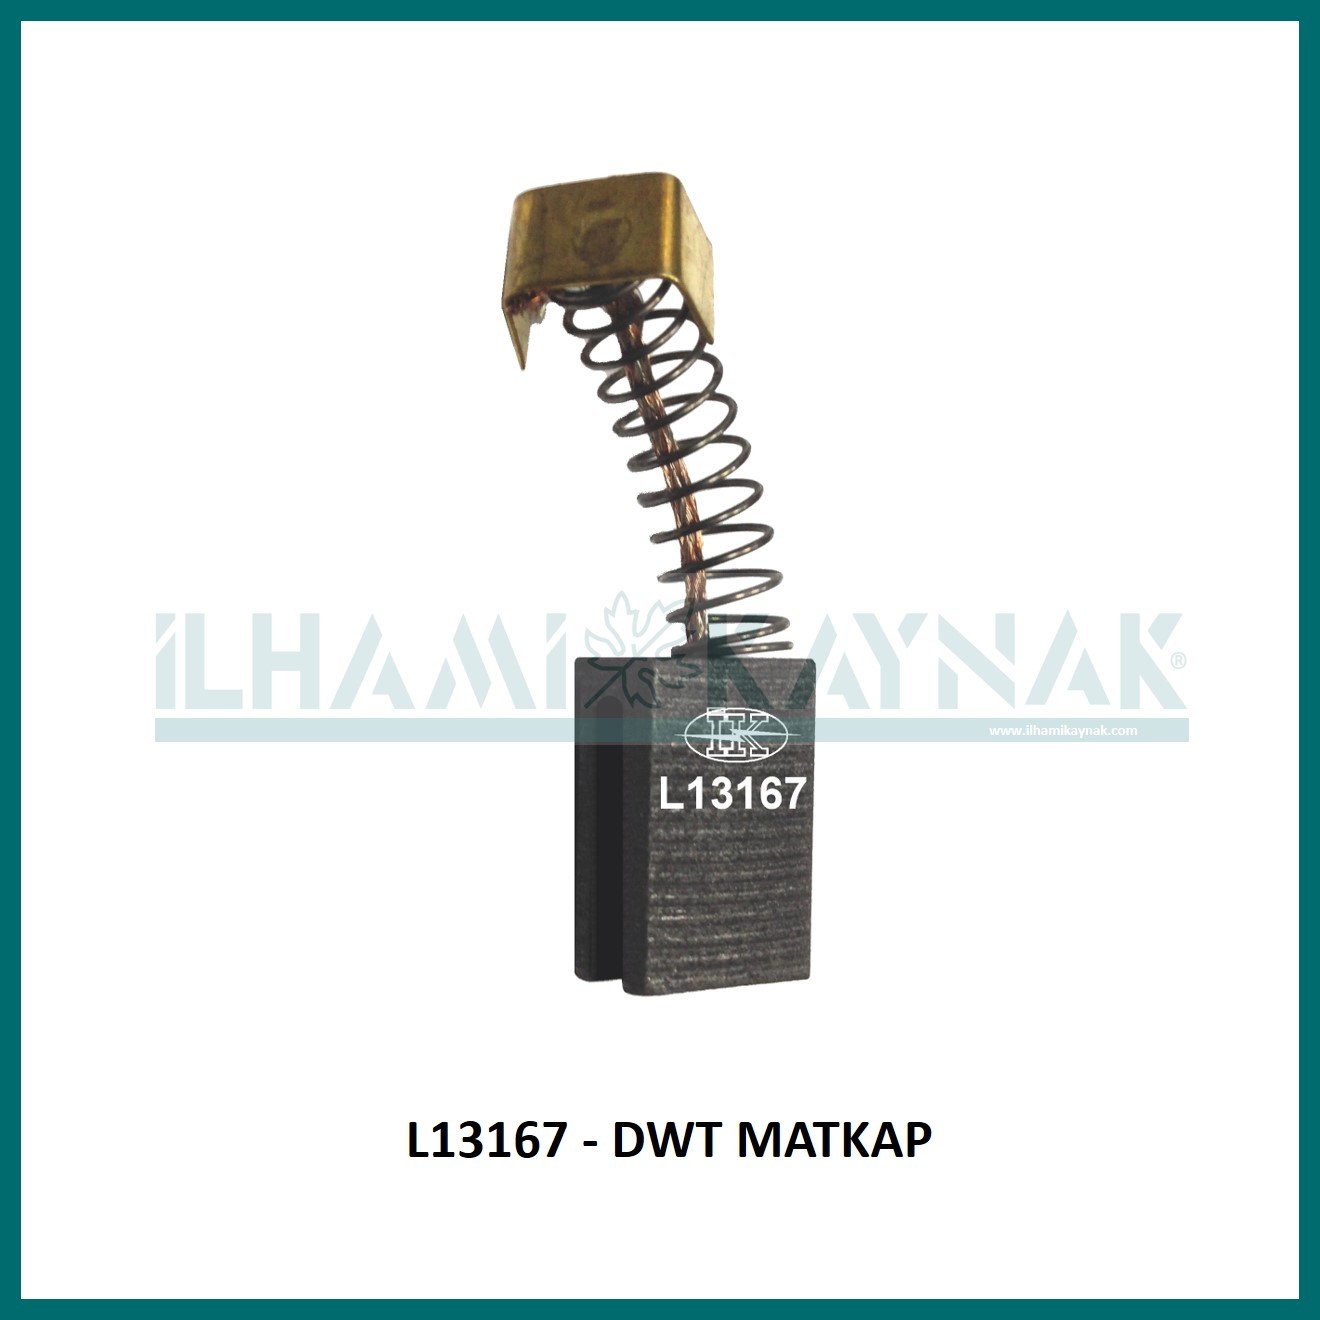 L13167 - DWT MATKAP - 6.6*11*17 mm - Minimum Satın Alım: 10 Adet.